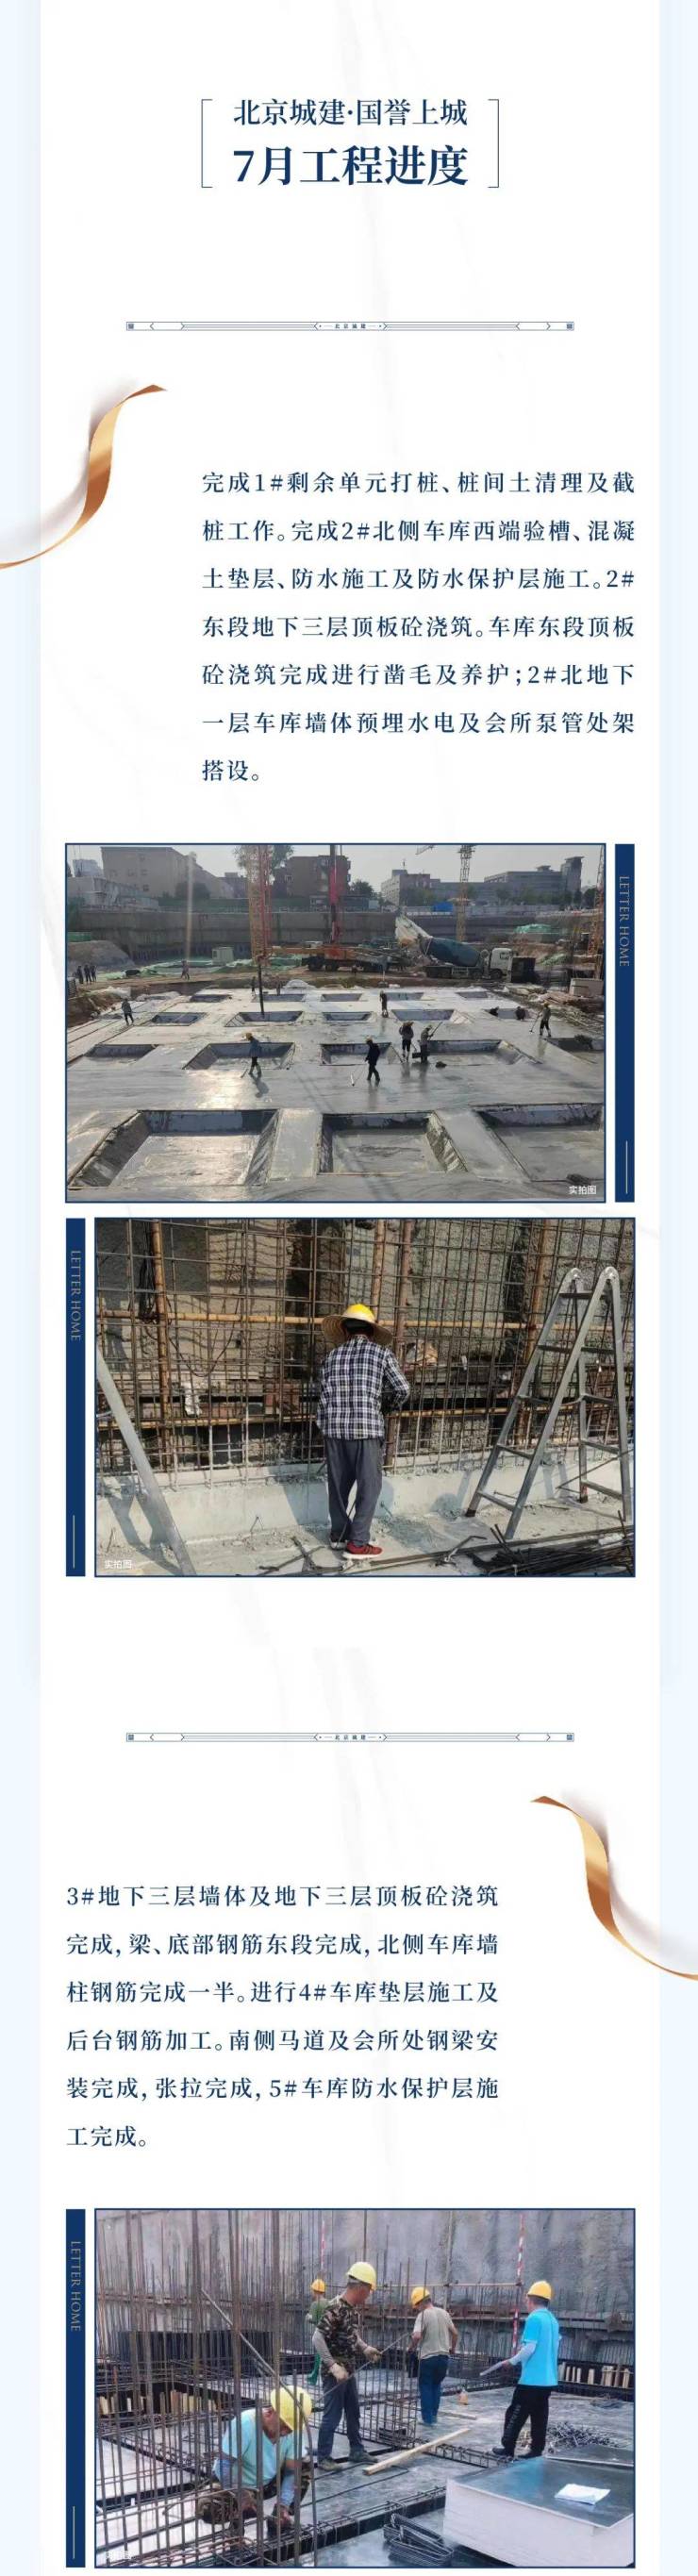 北京城建&middot;国誉上城|7月工程进度播报